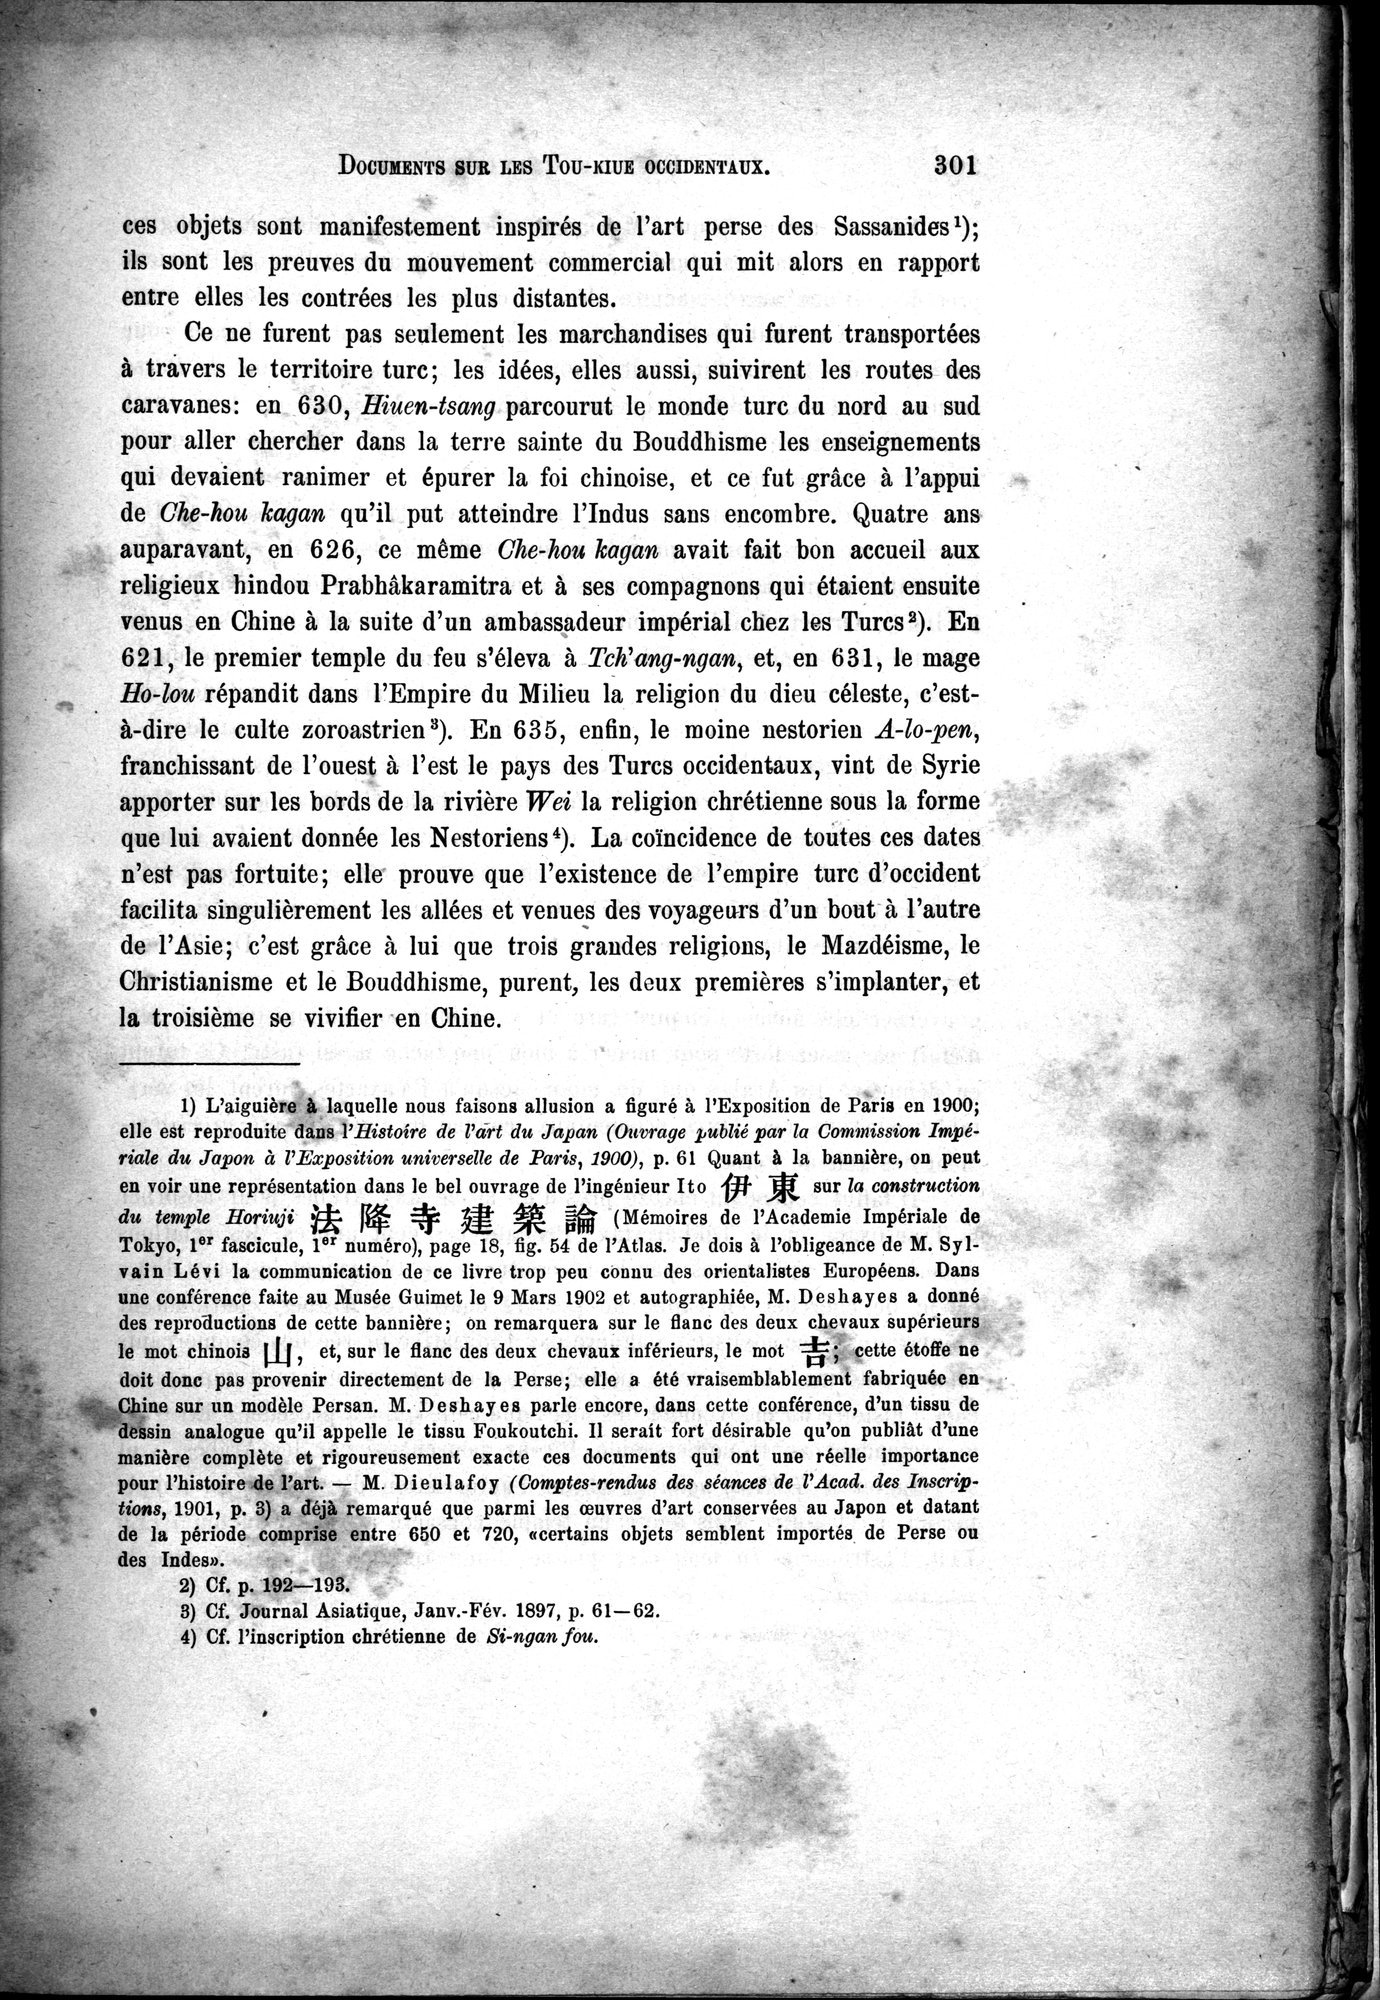 Documents sur les Tou-kiue (Turcs) occidentaux : vol.1 / Page 311 (Grayscale High Resolution Image)